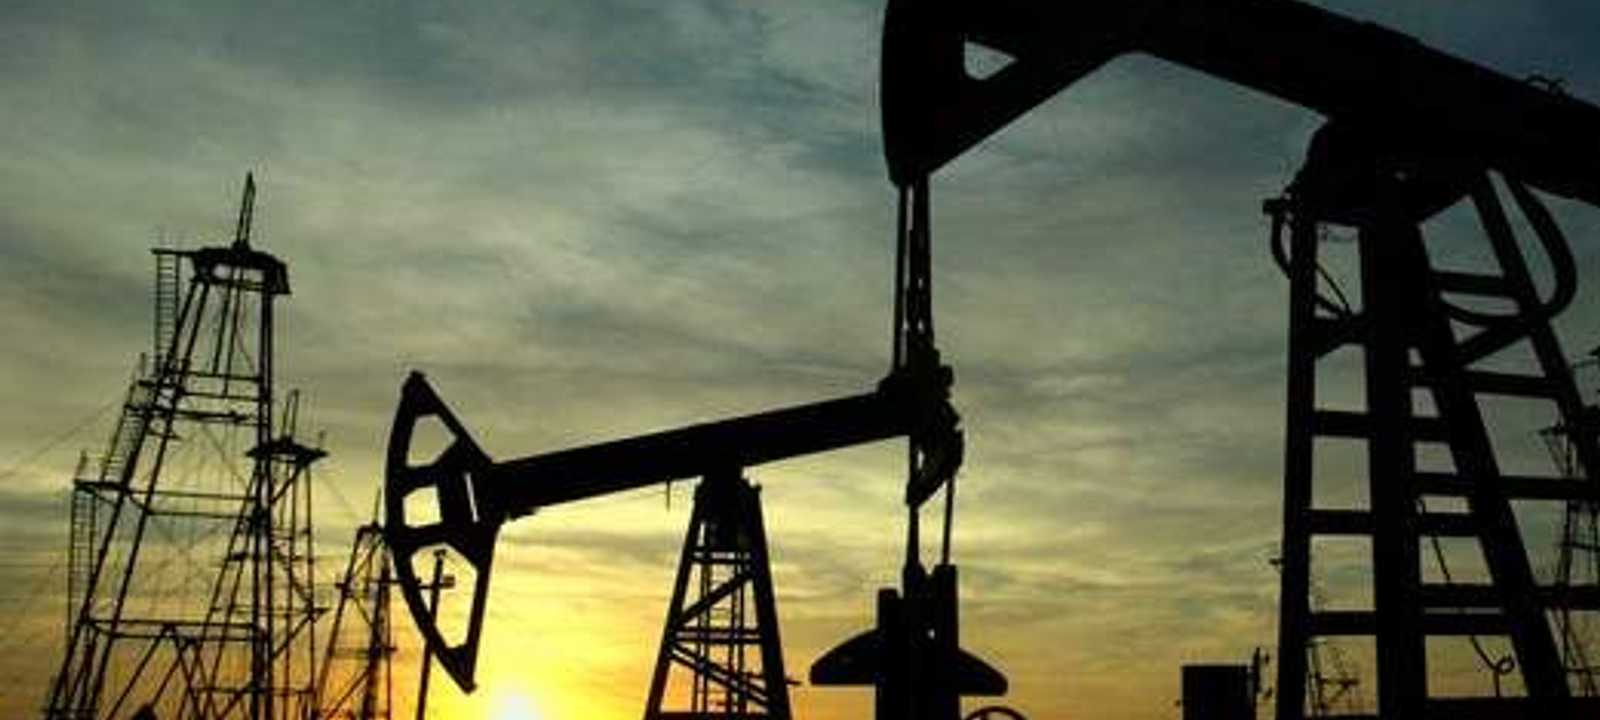 خفض منتجو النفط في الولايات المتحدة خططهم للإنفاق الرأسمالي